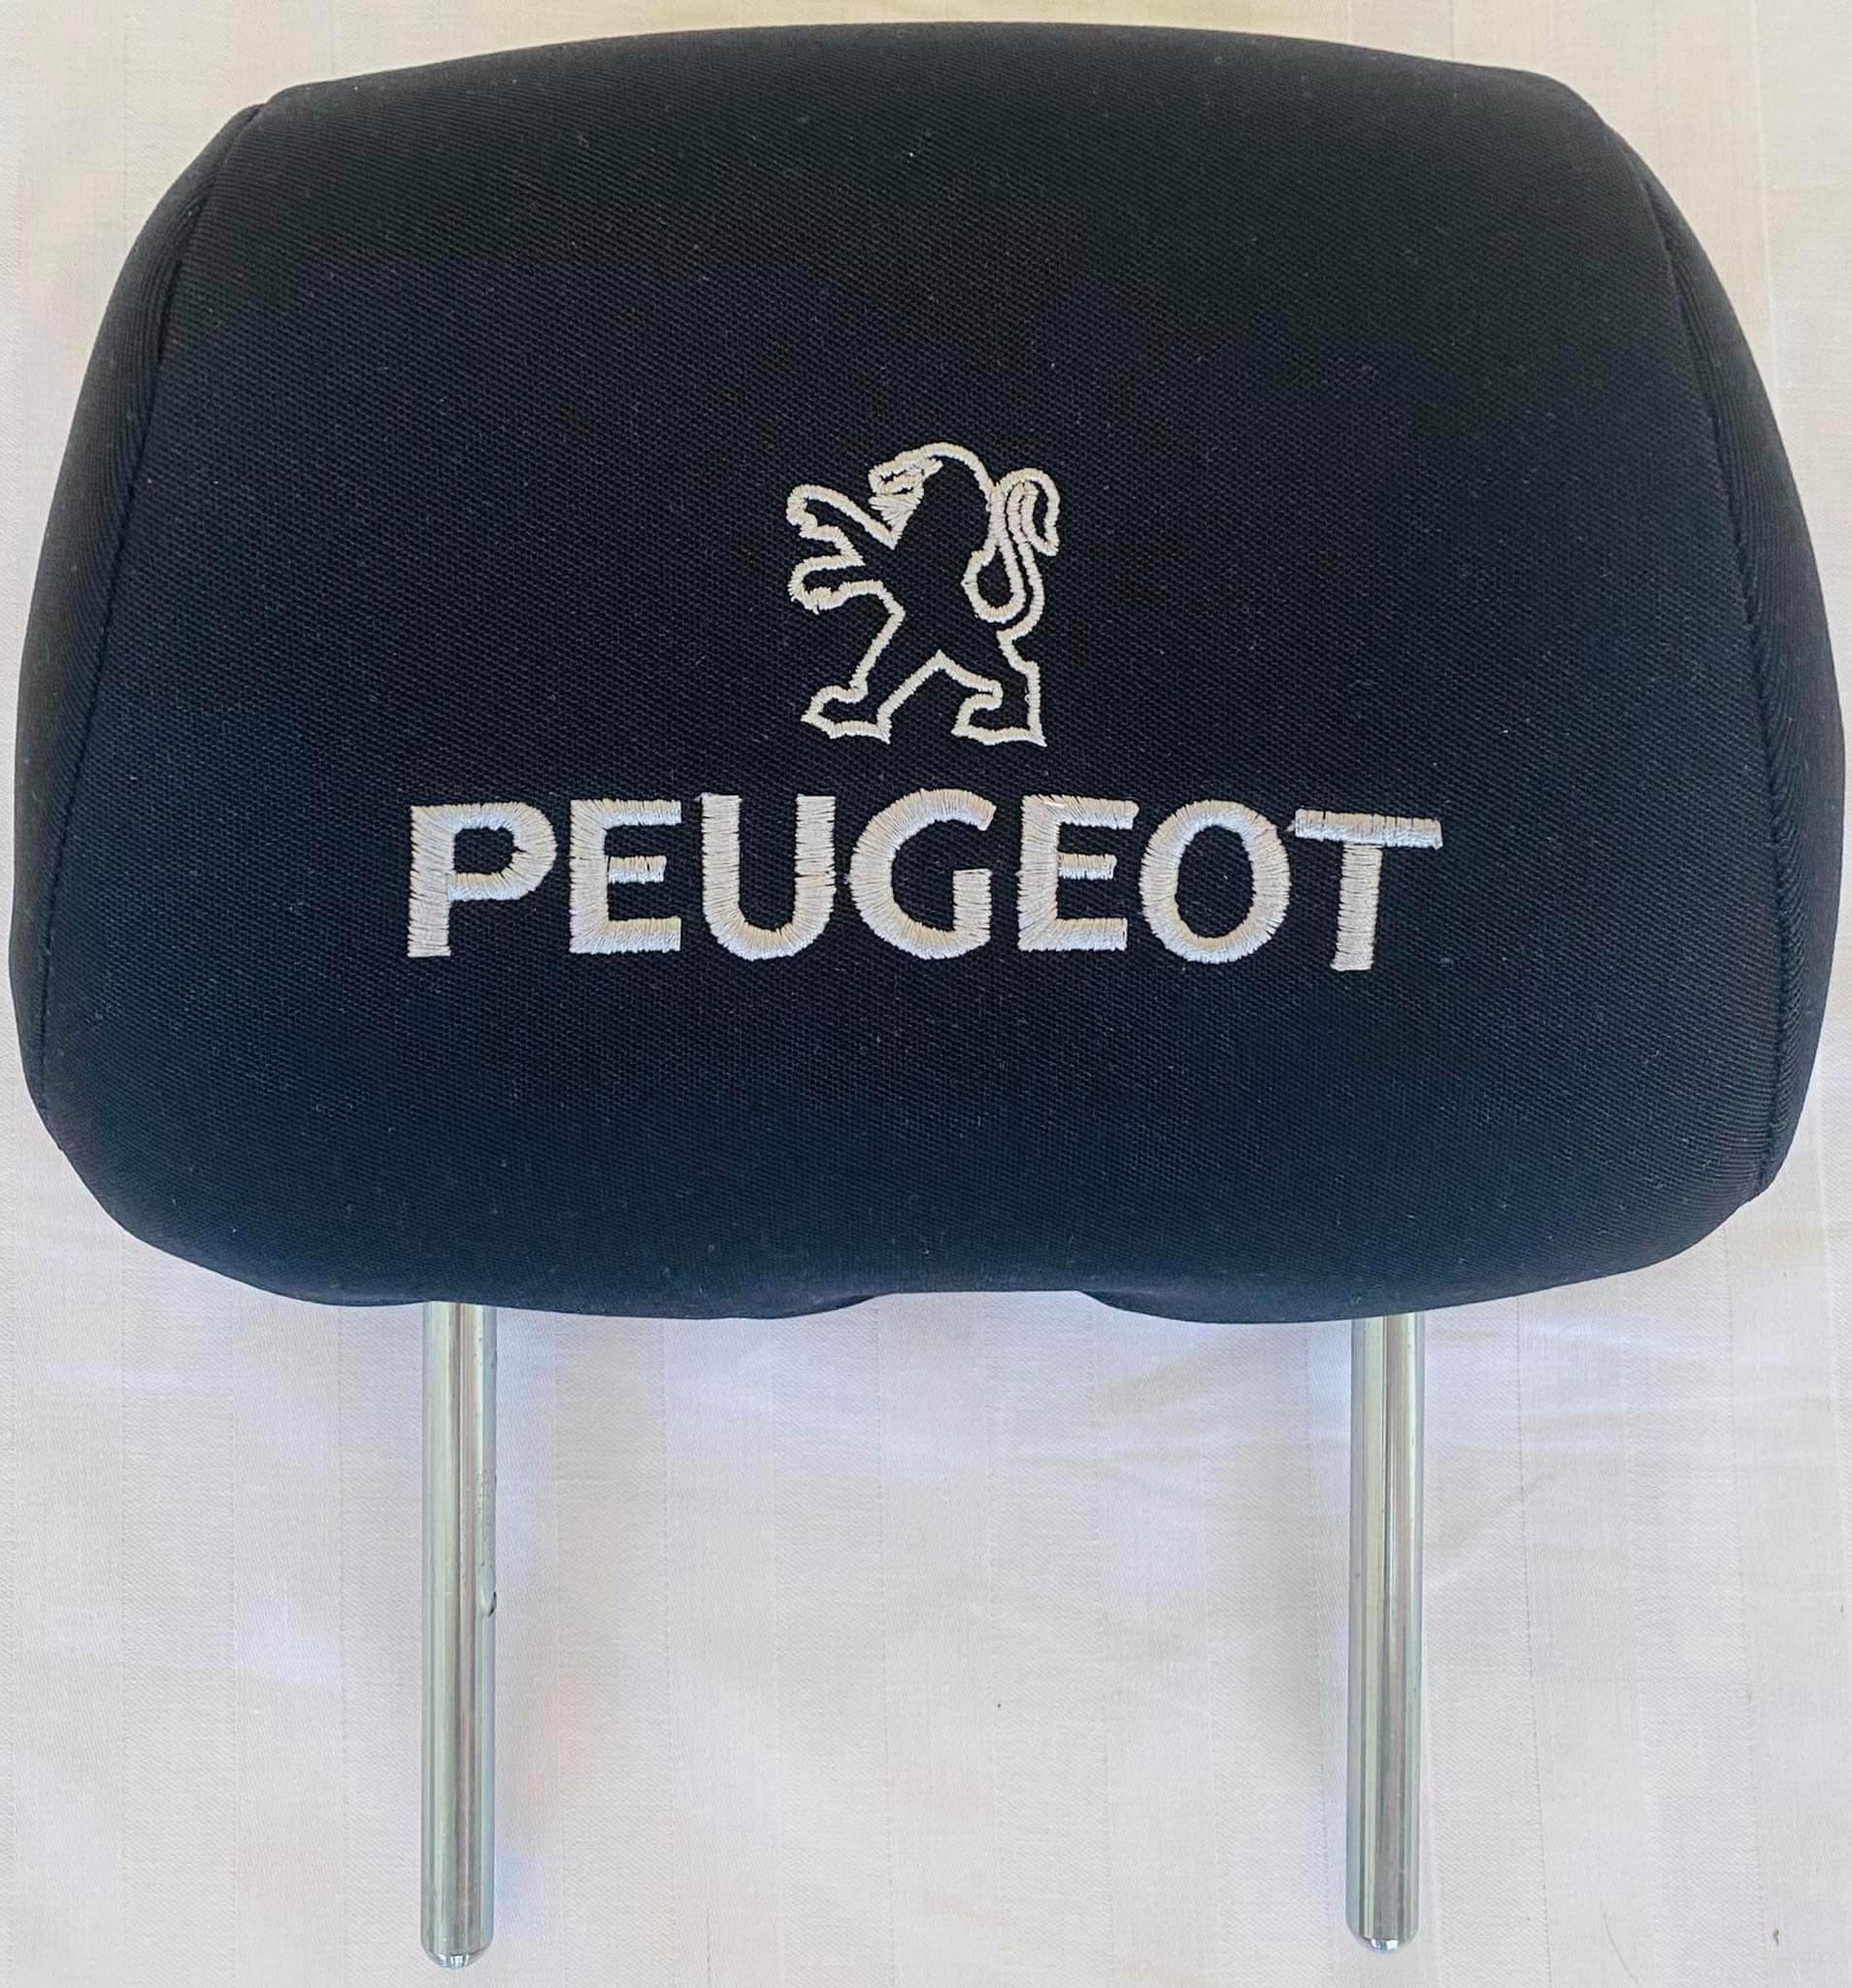 Čierne návleky na opierky hlavy s logom Peugeot